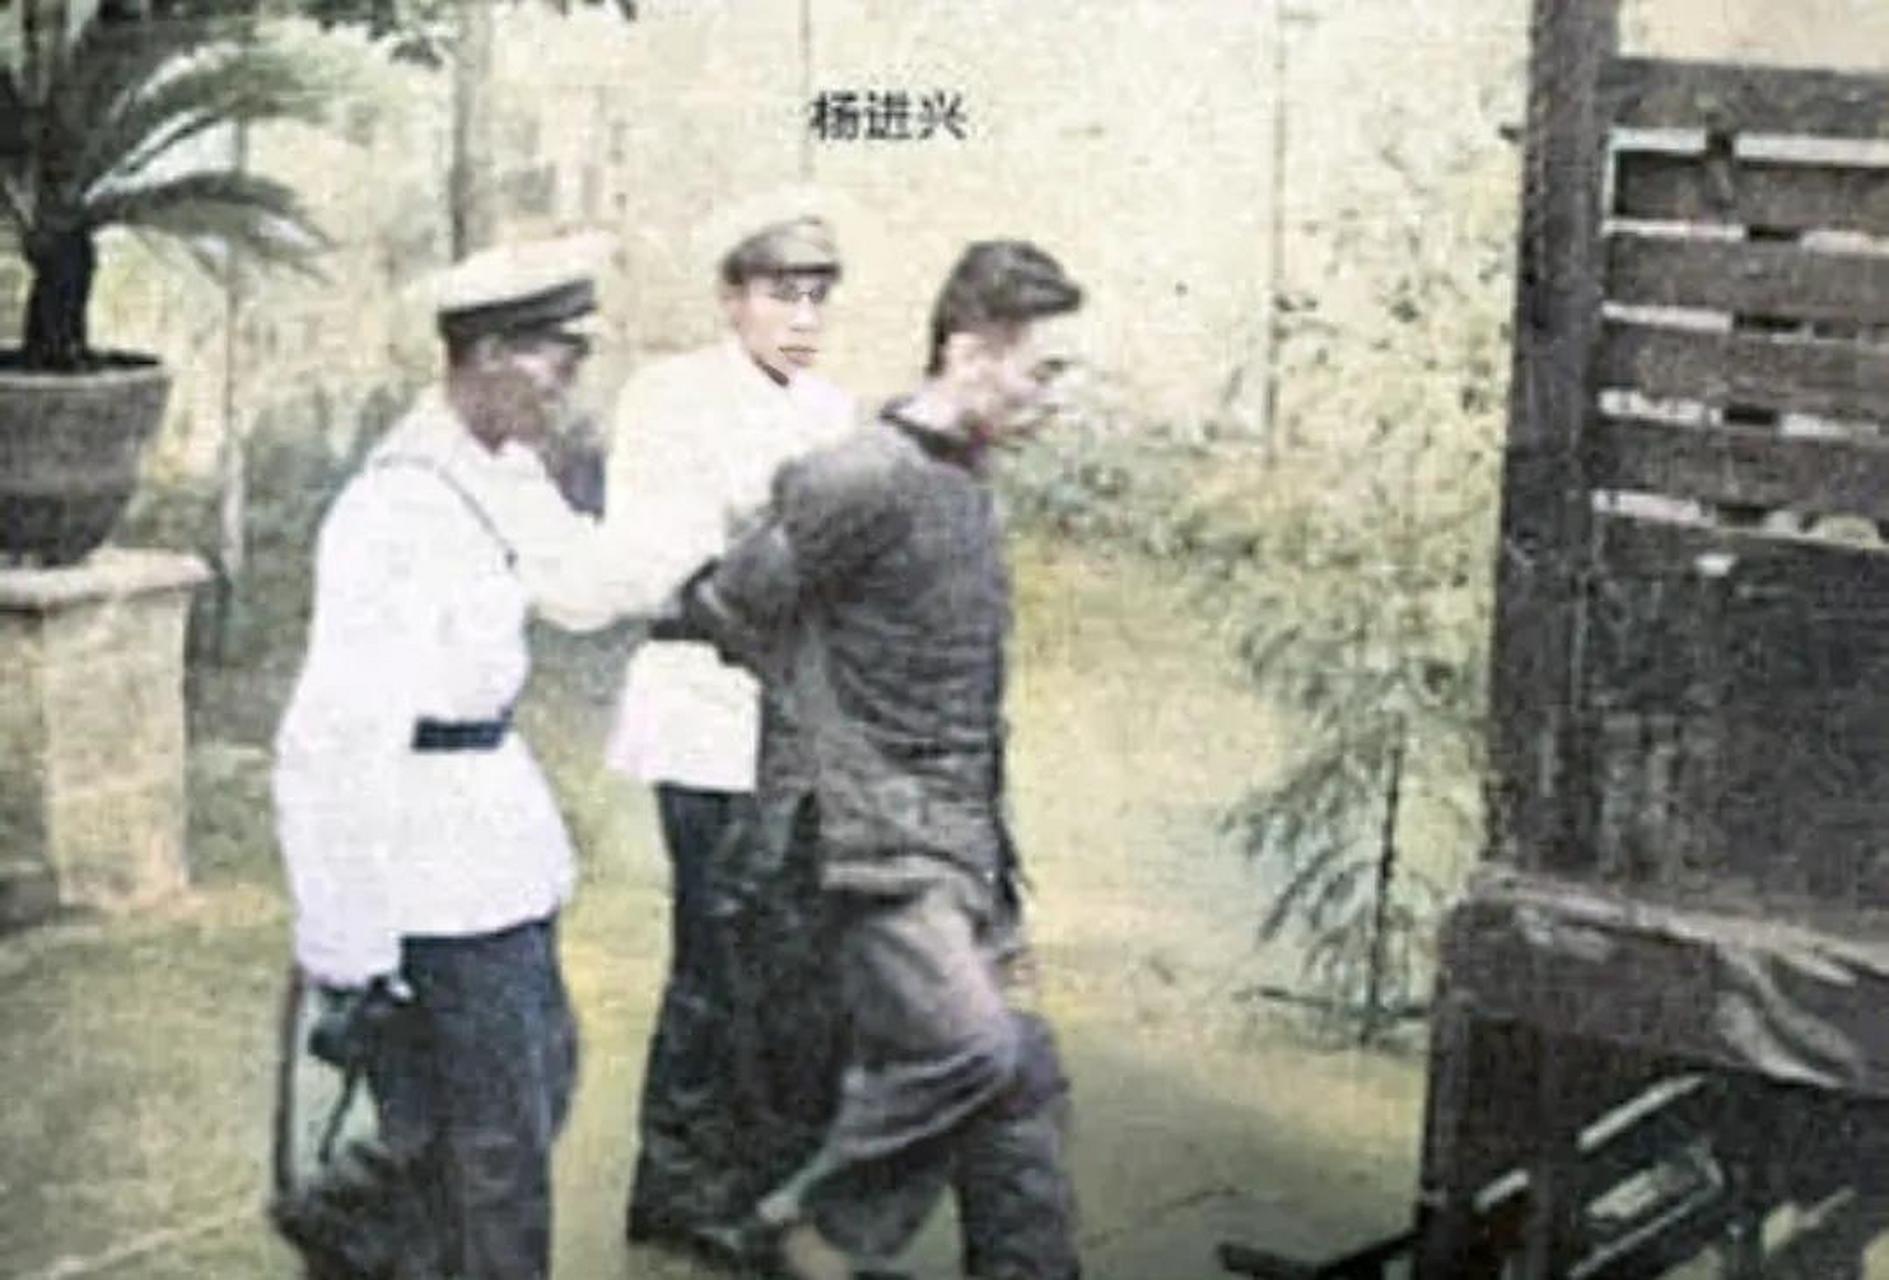 1958年,国民党白公馆监狱,看守所长杨进兴被押赴刑场枪决时,现场一张